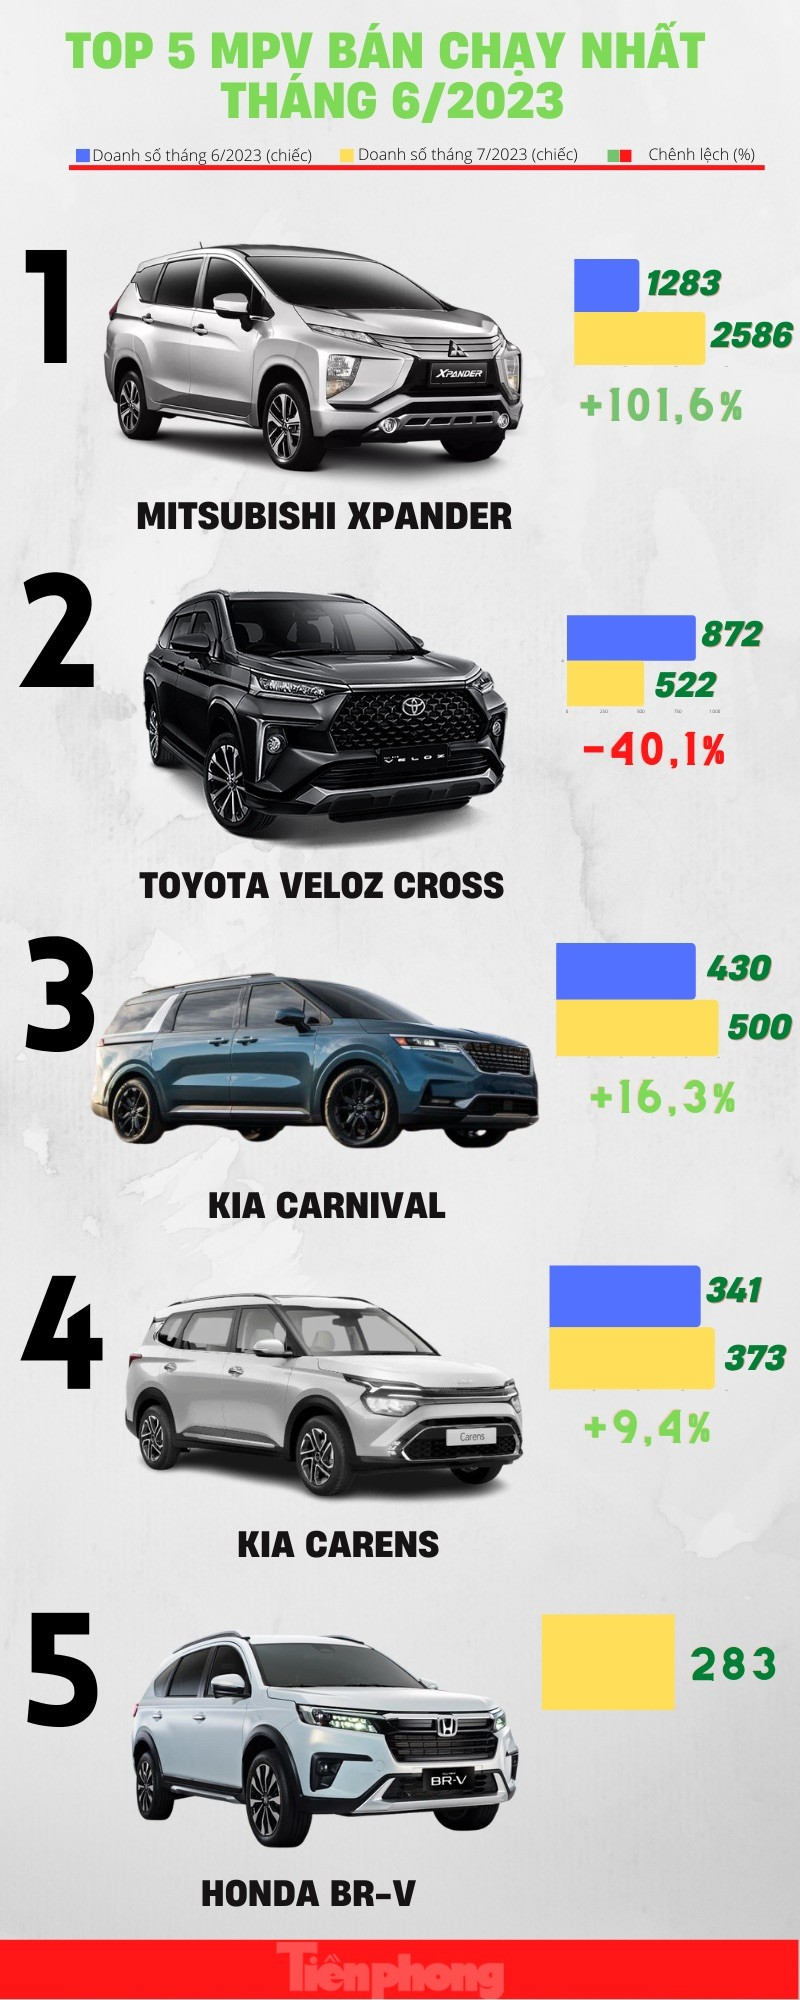 Những mẫu xe đa dụng có doanh số cao nhất tháng 7 ảnh 1